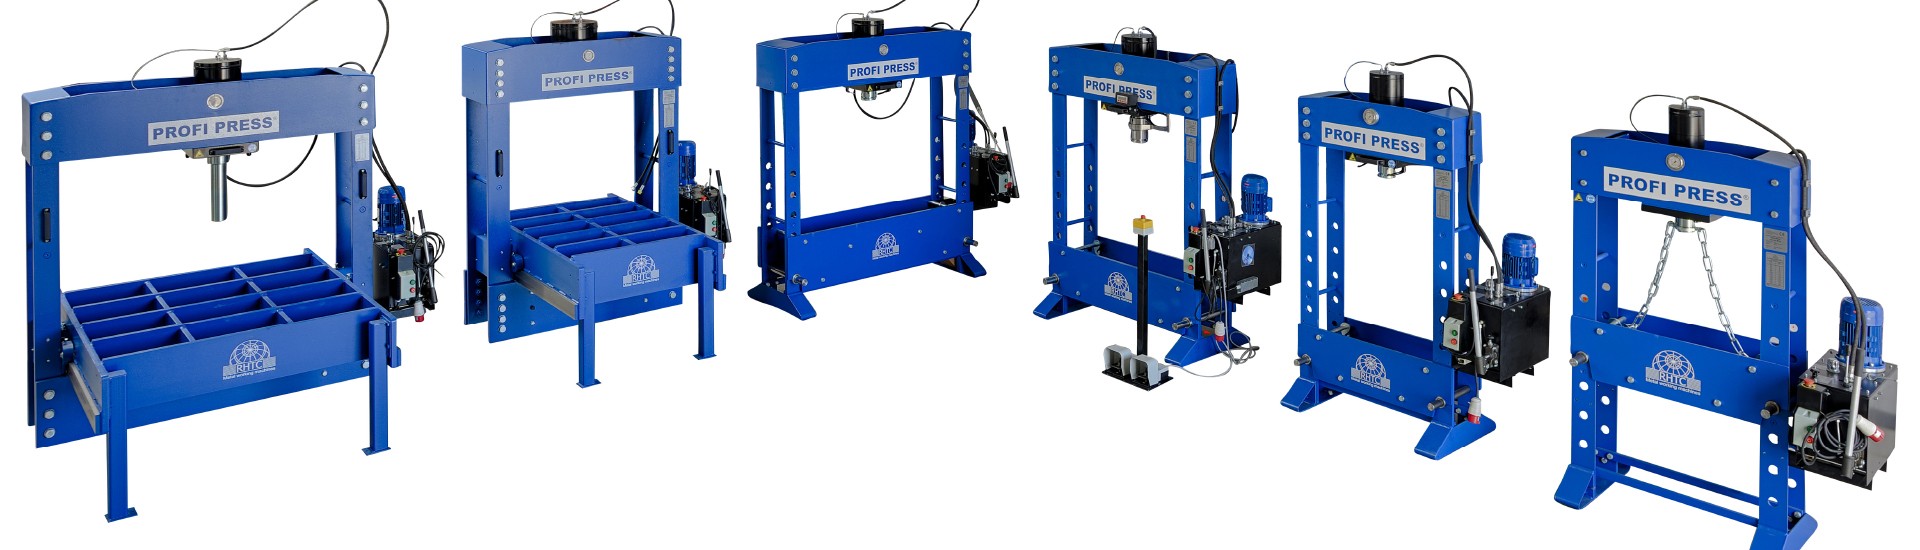 Profi Press hydraulic press models